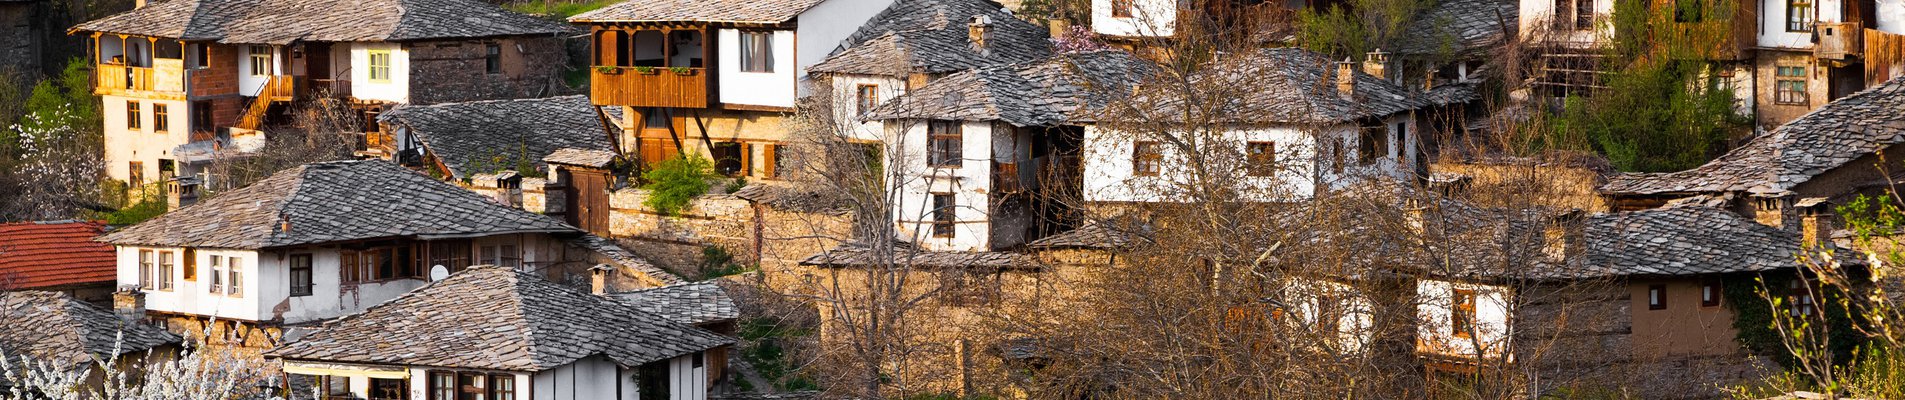 Гледка към традиционни къщи от село Лещен